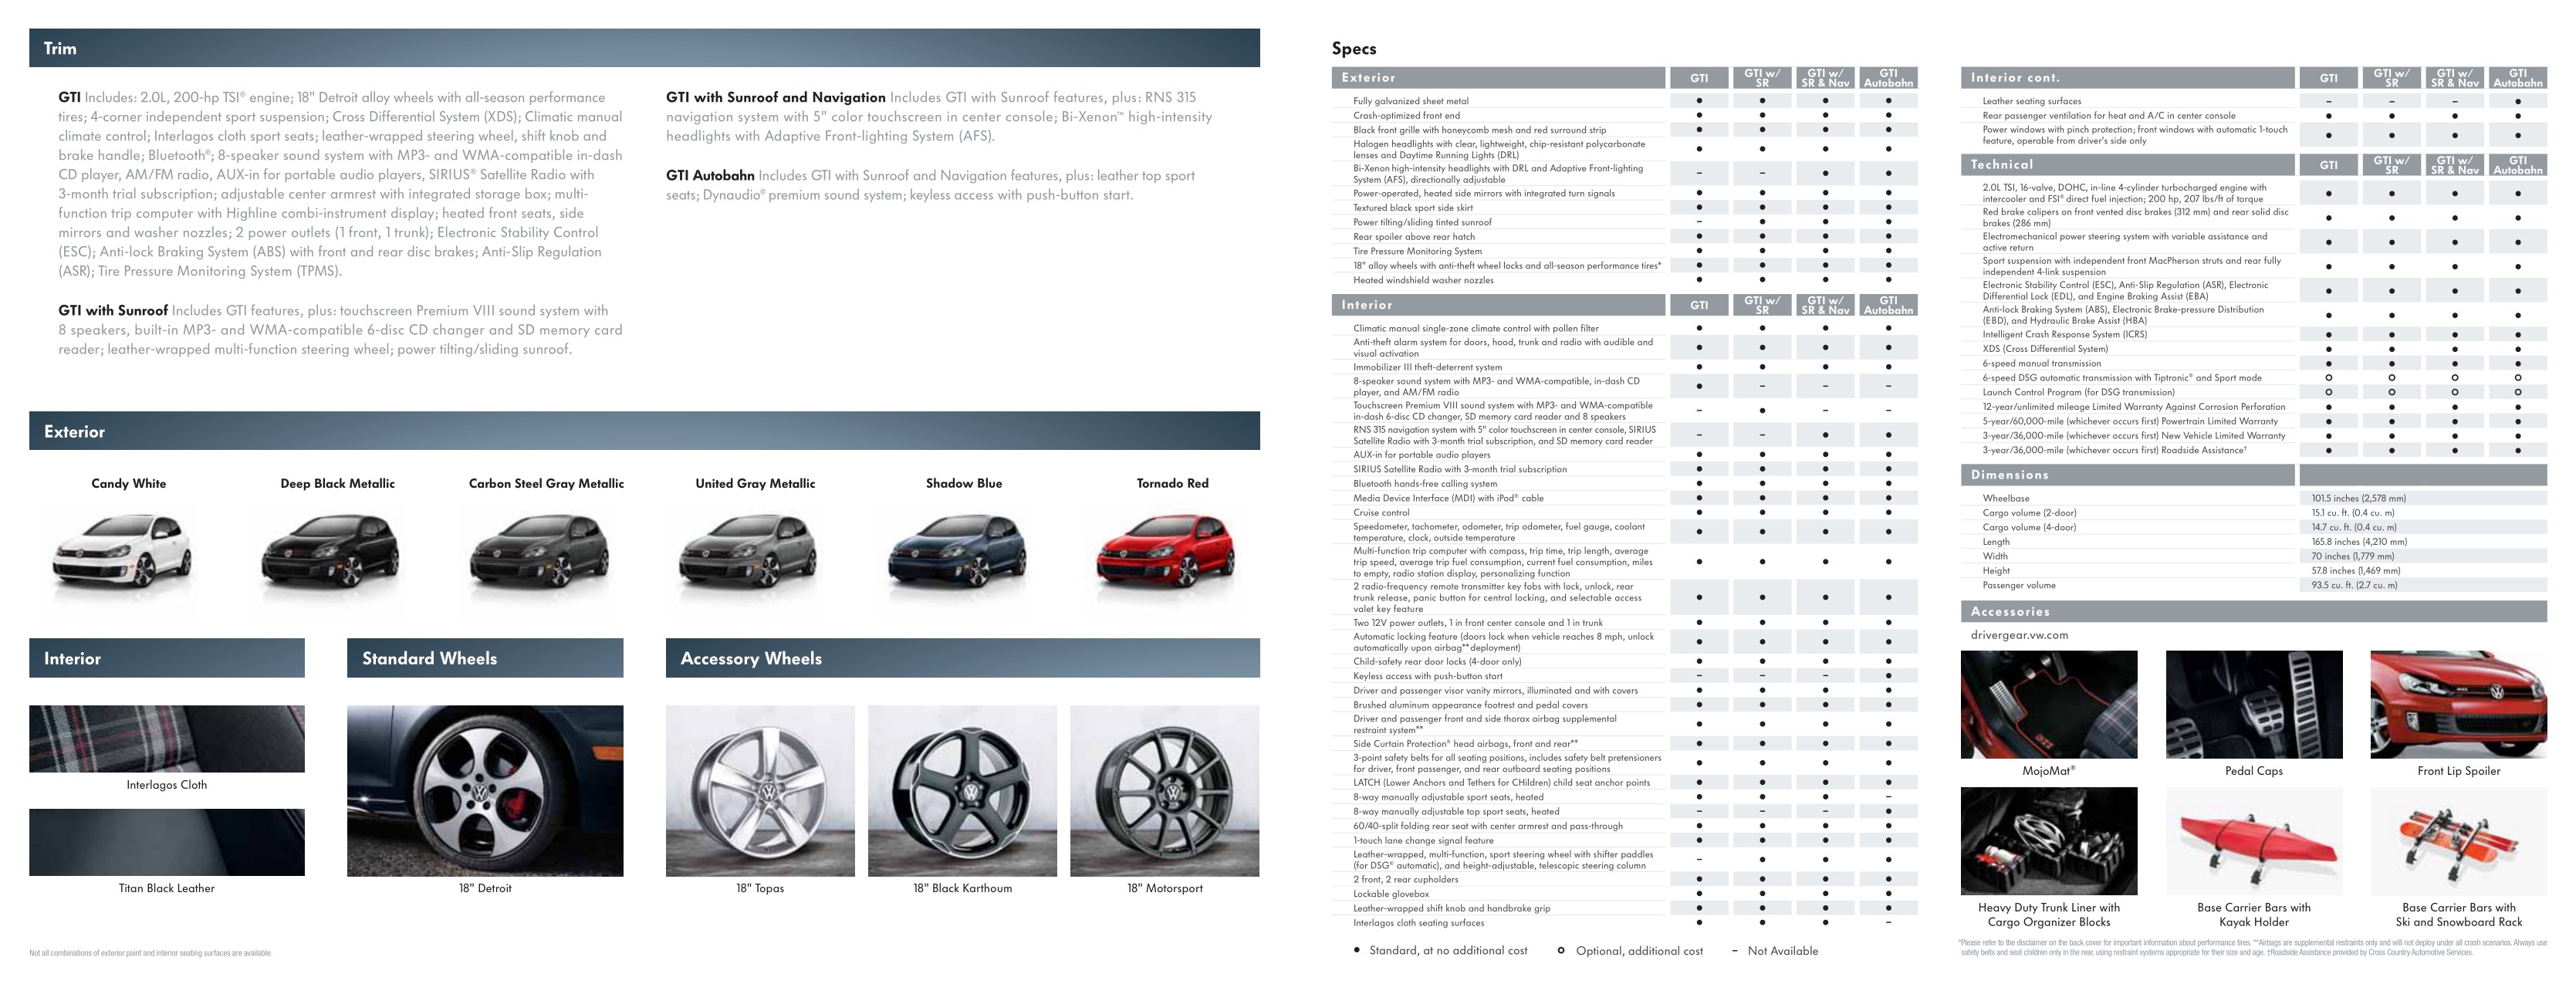 2011 VW Golf GTi Brochure Page 4